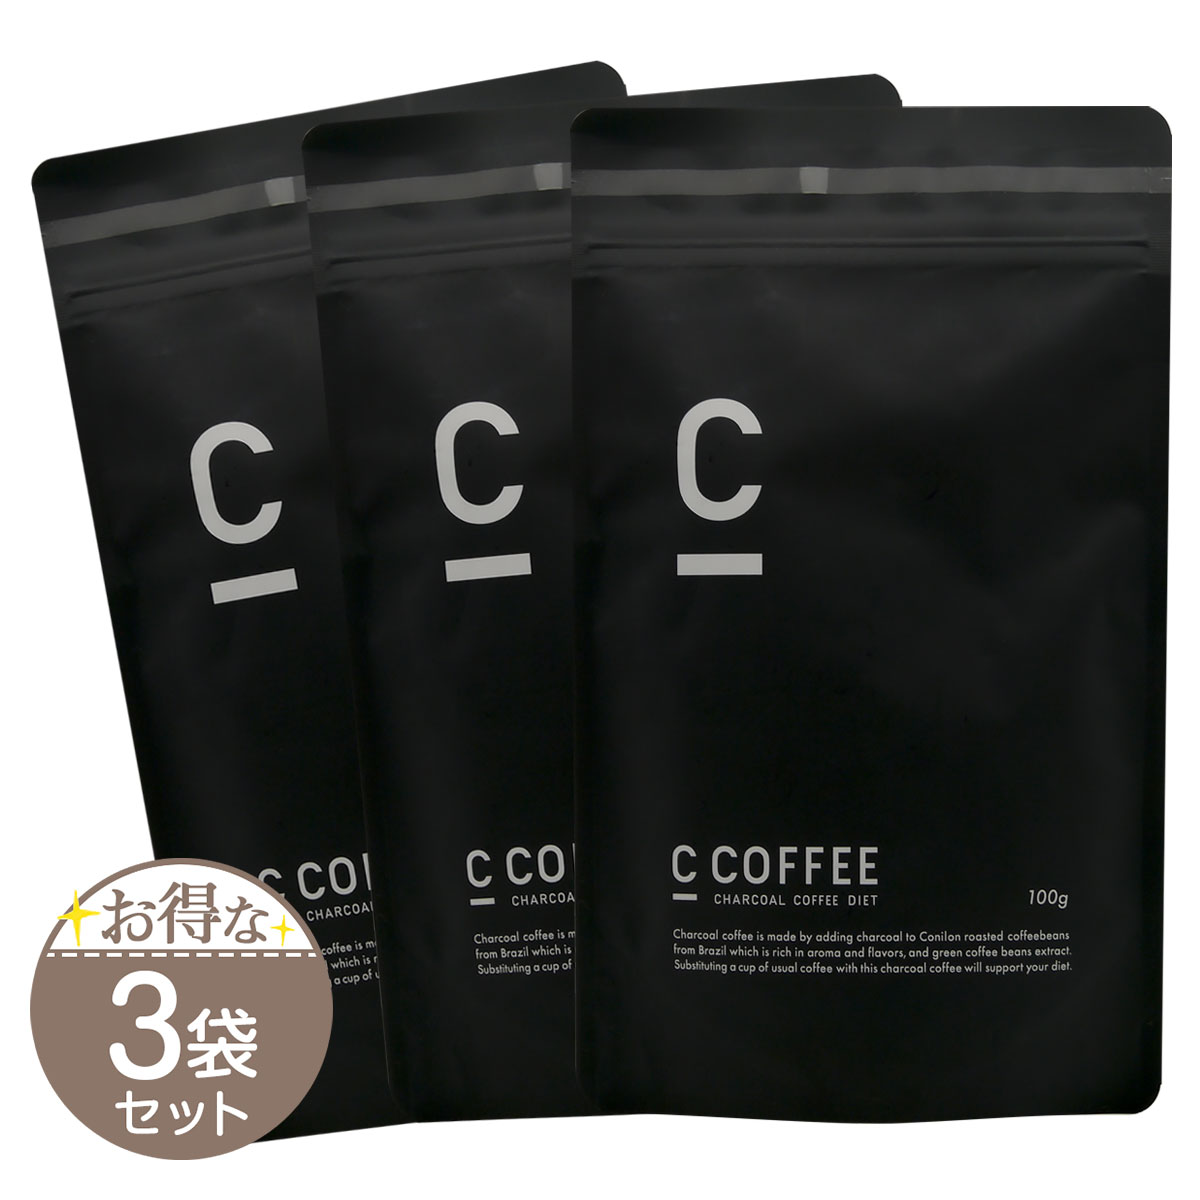 【 3袋セット 】 シーコーヒー C COFFEE 100g [ 2021年12月リニューアル最新版 ] MEJ ダイエット メール便送料無料SPL / CコーヒーS07-01 / CCOFFE-03P